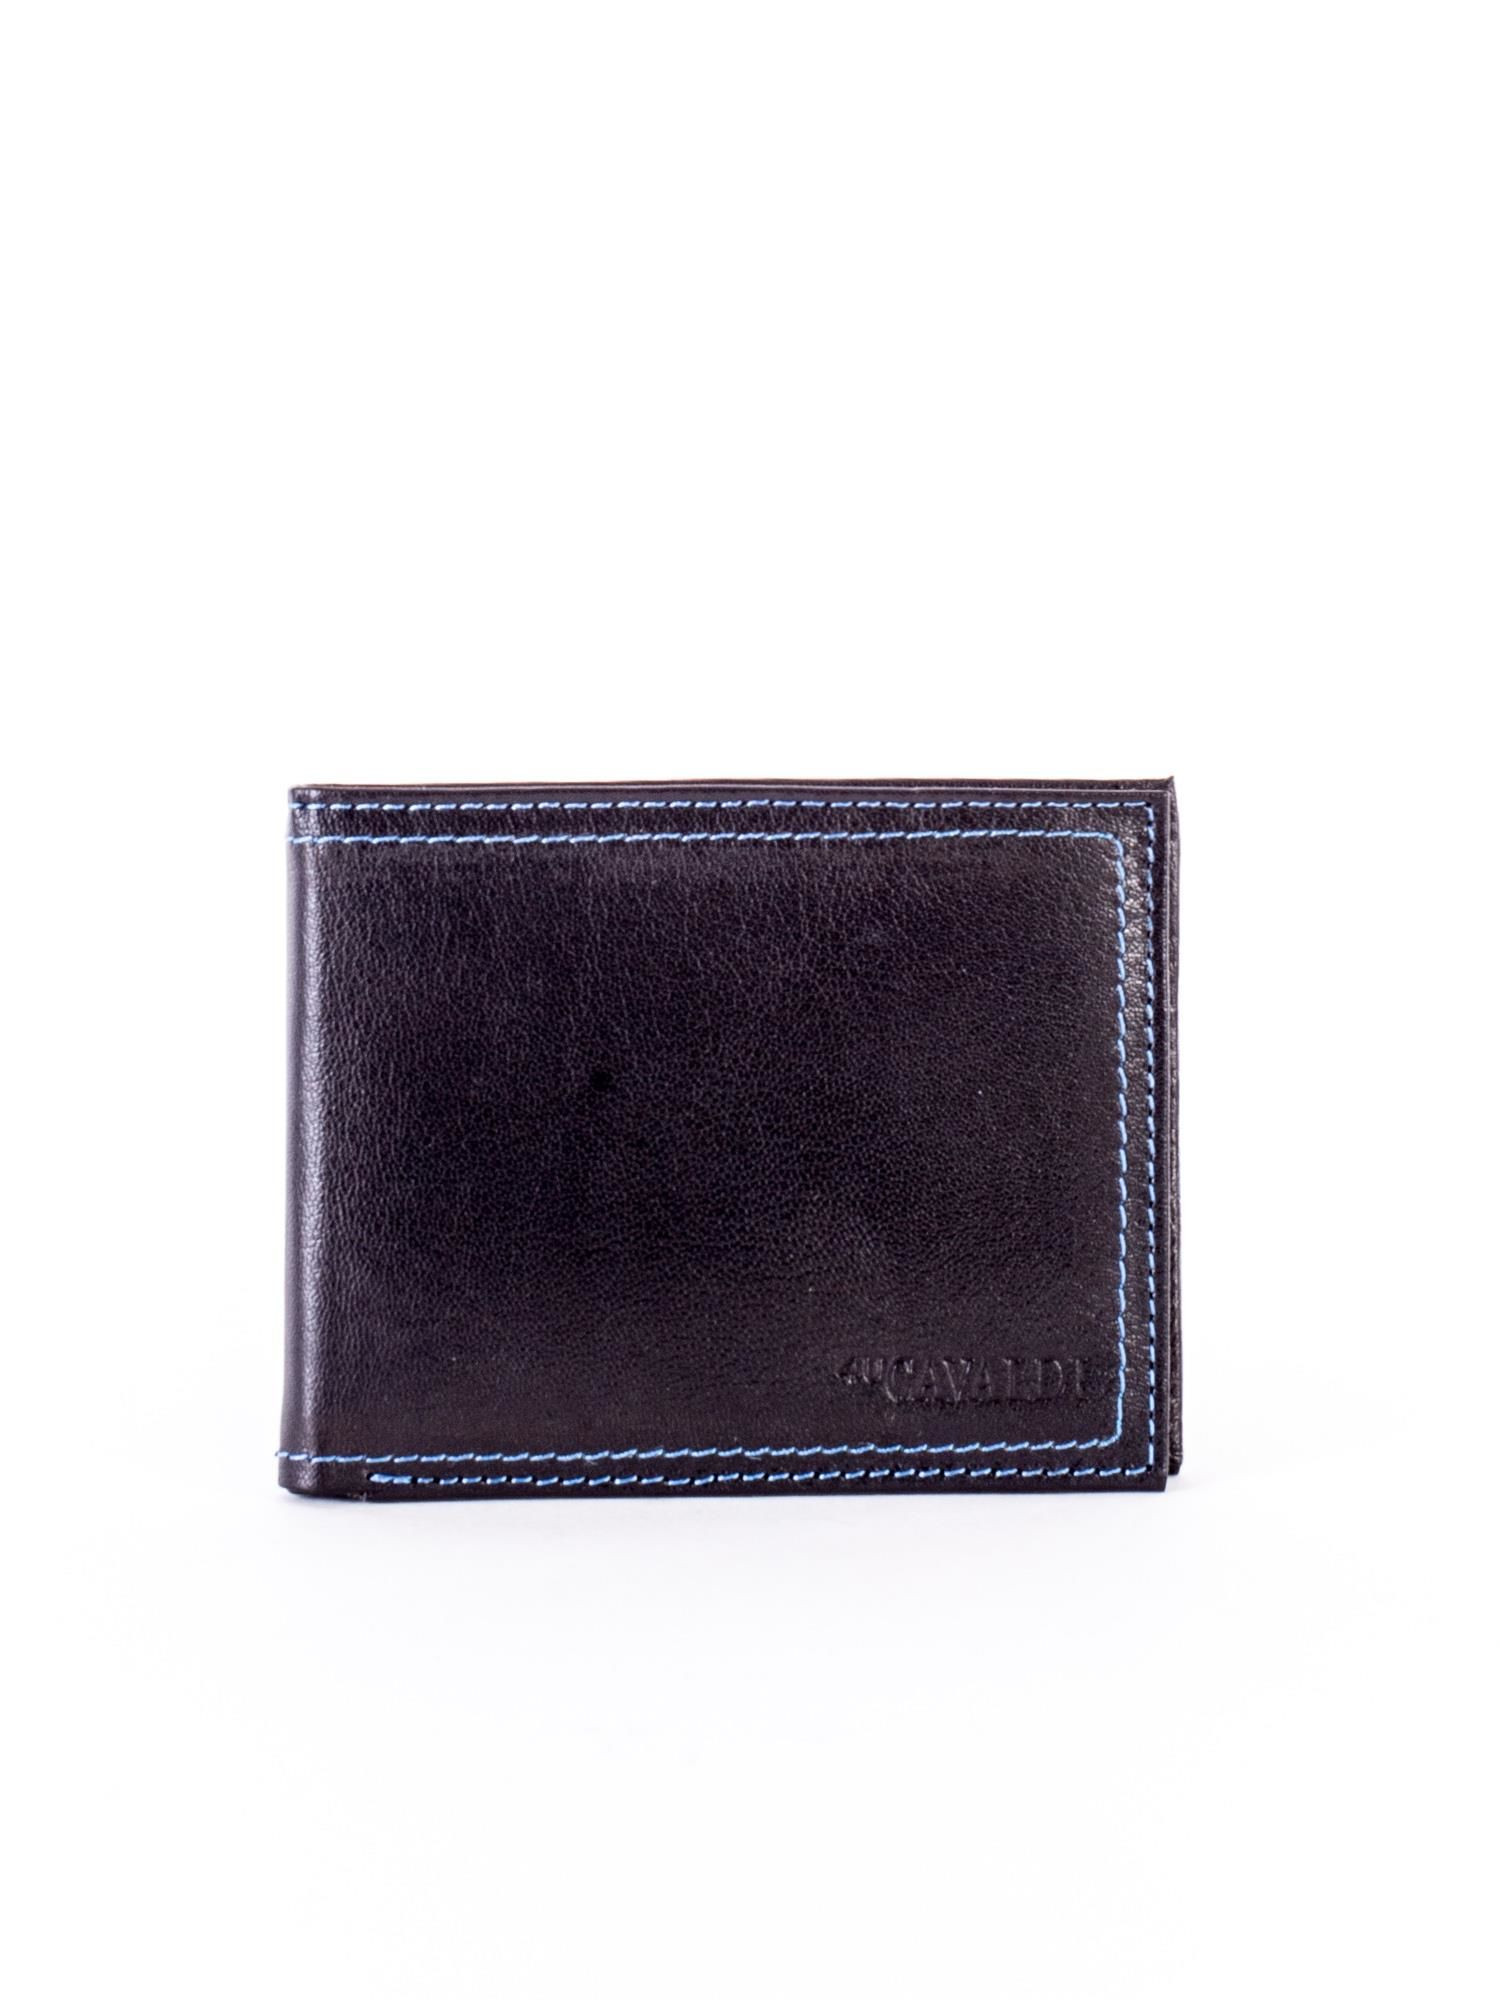 Peněženka CE PR N 7 GAL.24 černá a modrá jedna velikost